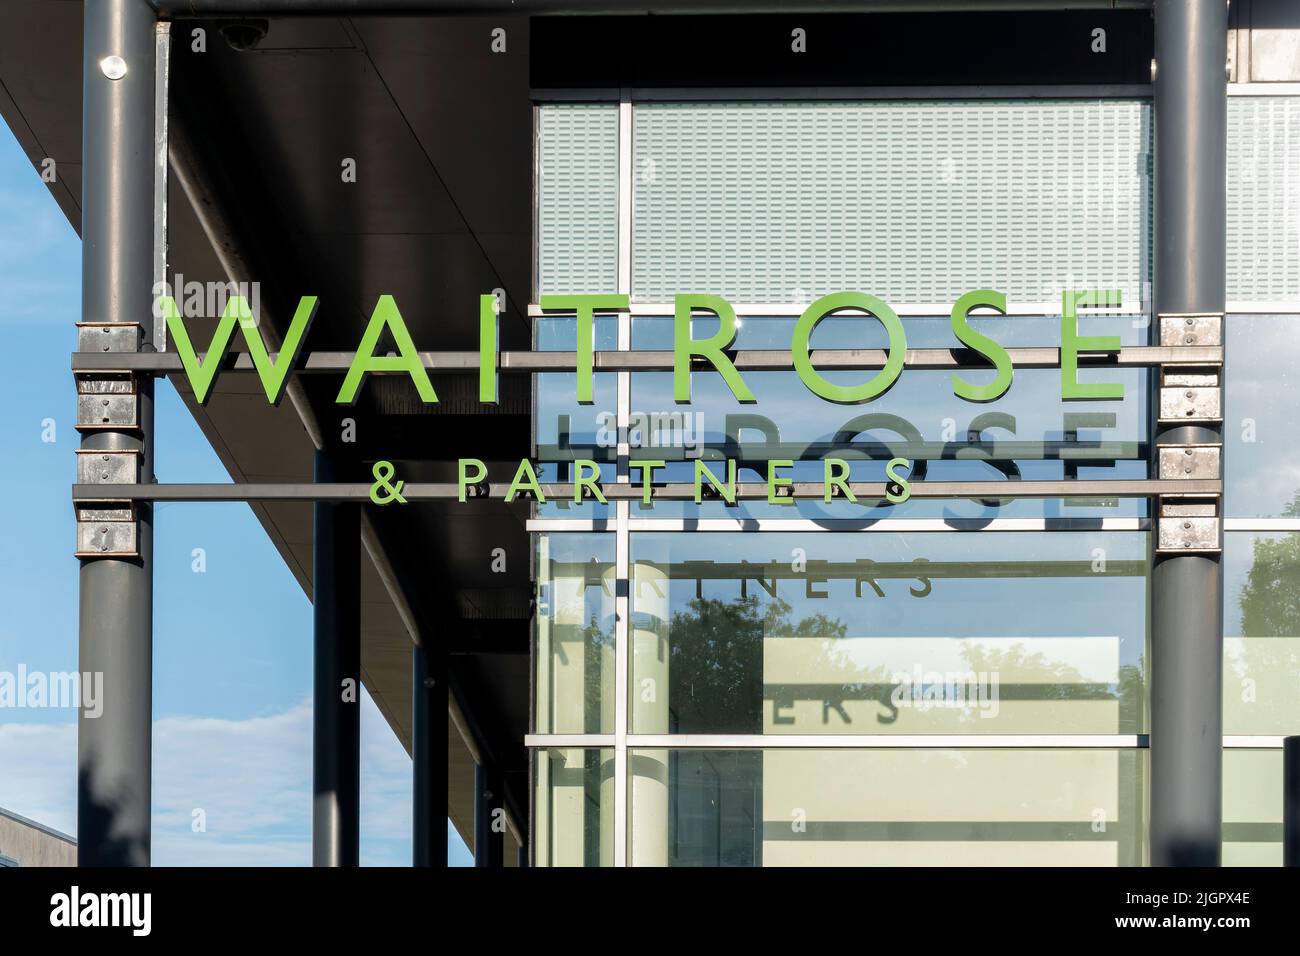 Un cartel de la tienda de Waitrose y sus socios se exhibe en el exterior de uno de sus supermercados. El letrero está escrito en la marca y los colores de las tiendas Foto de stock